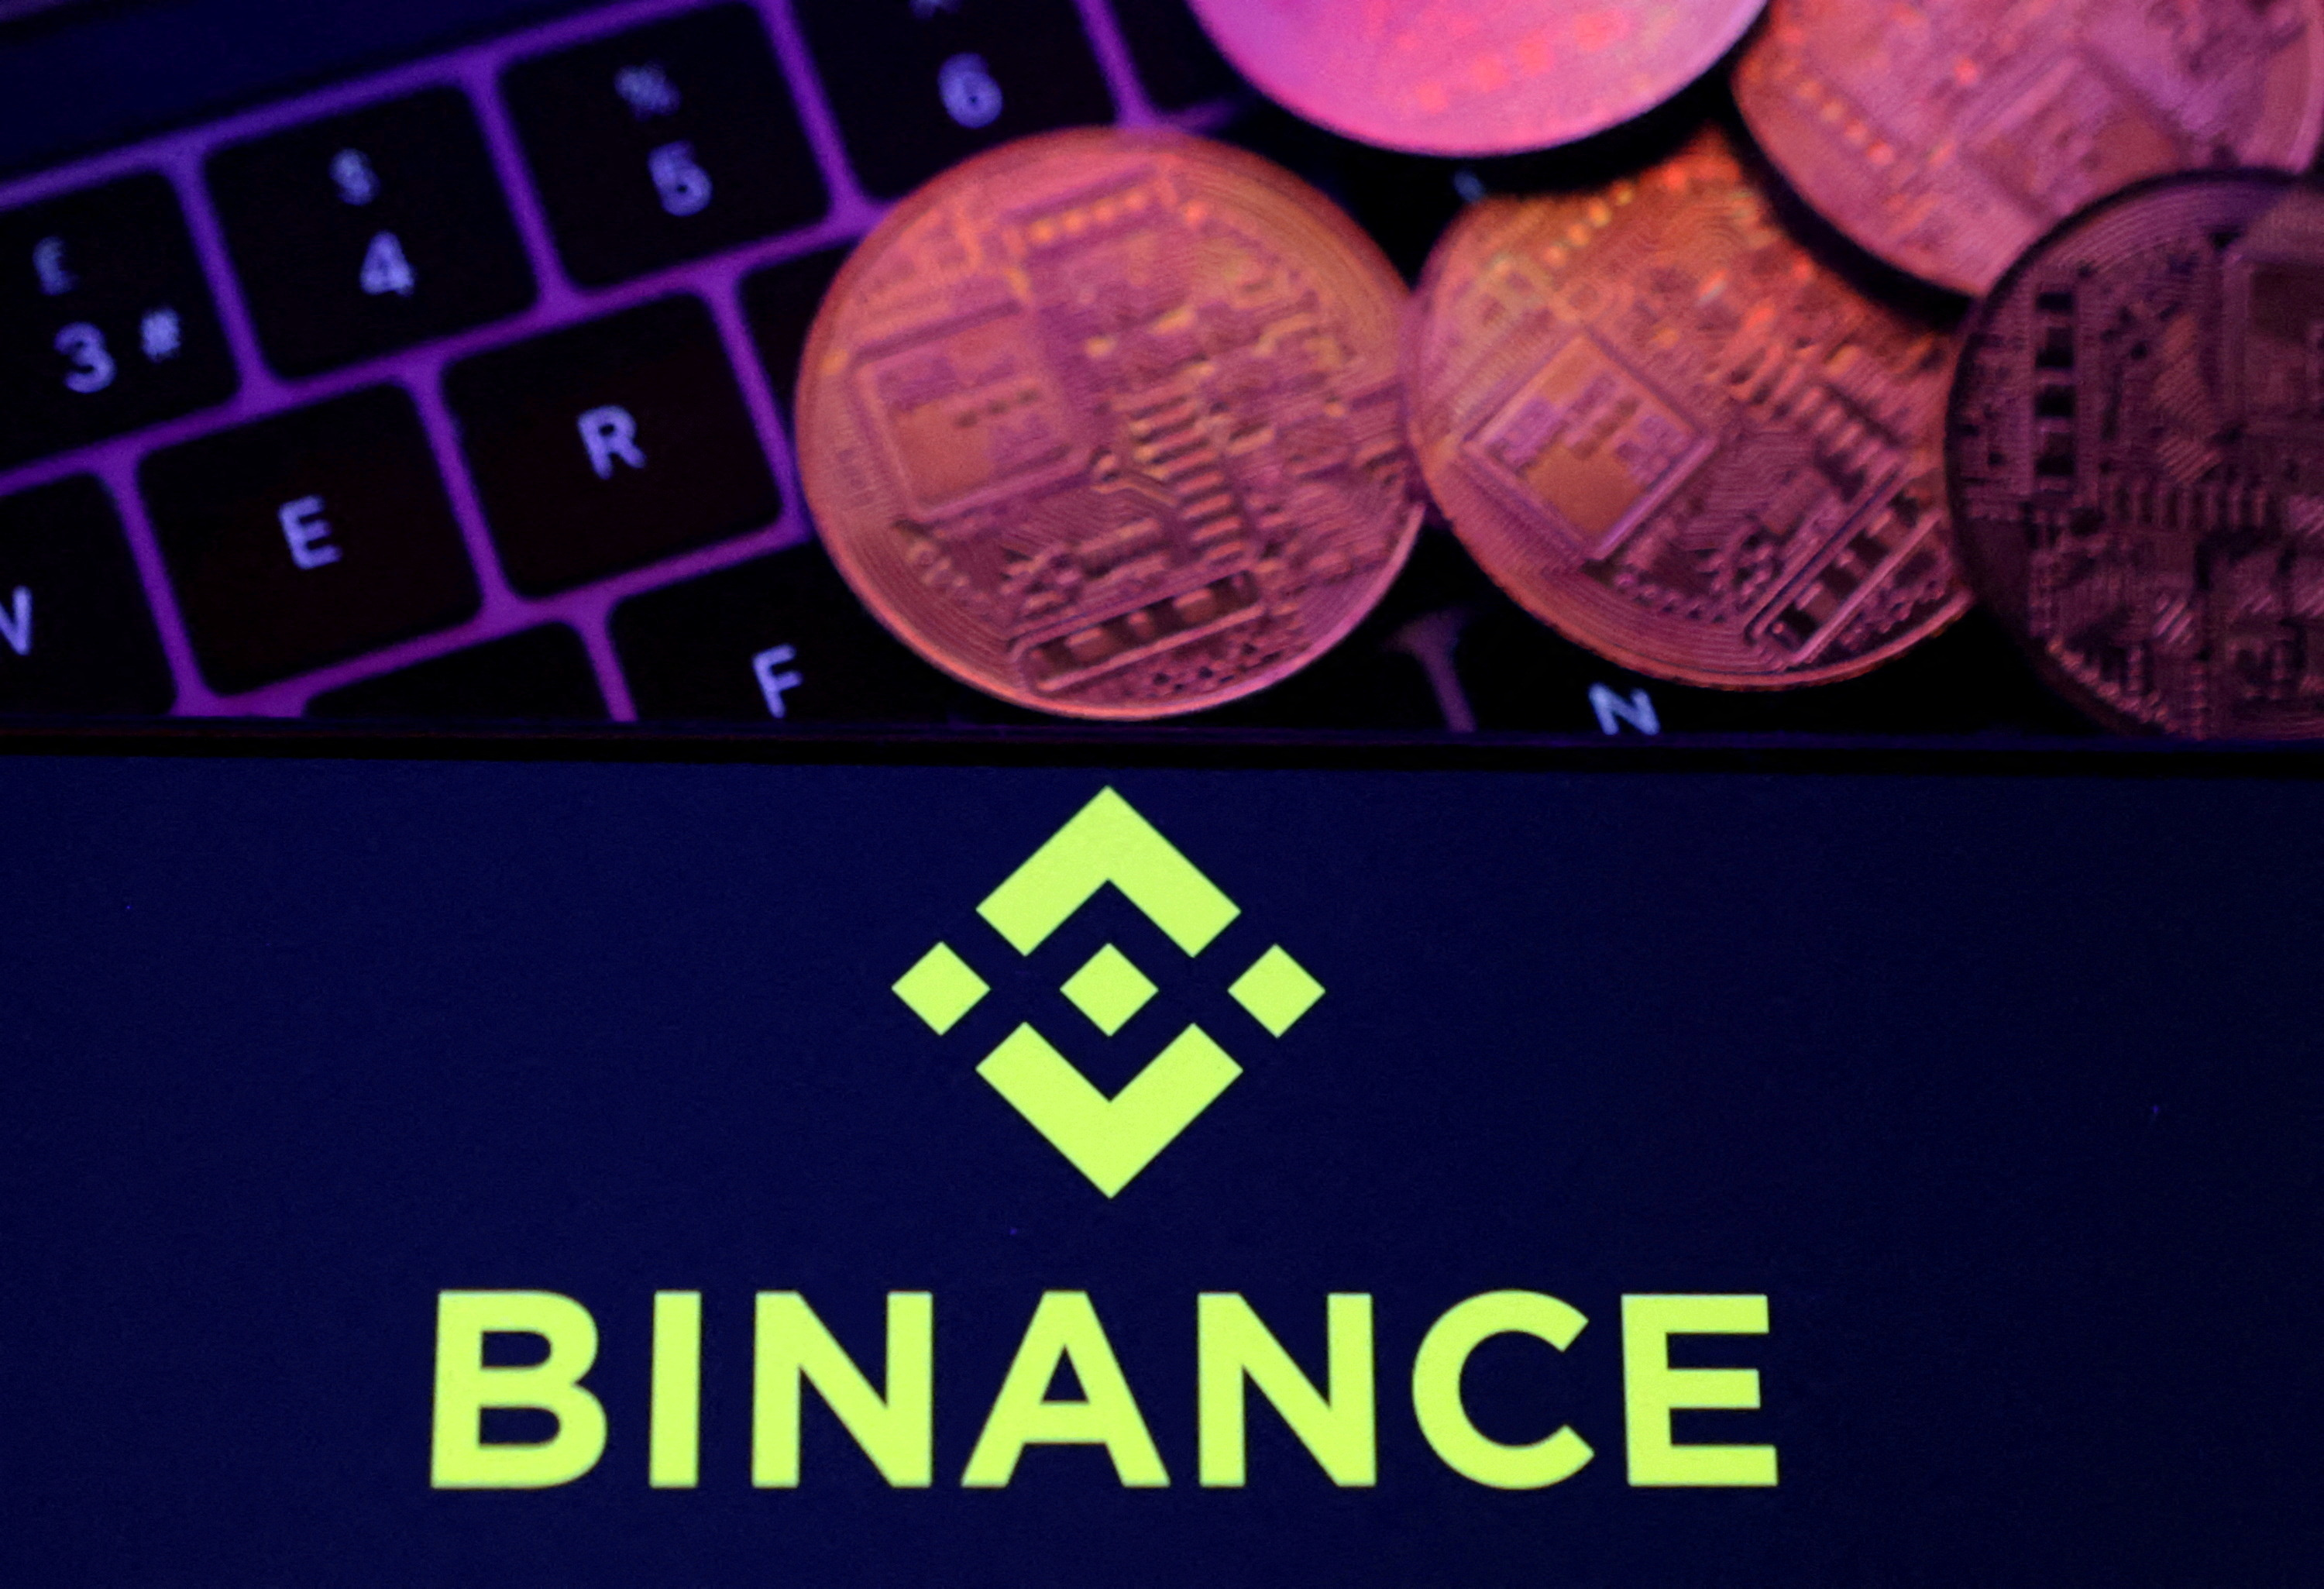 Binance anunció un “corralito” temporal sobre una cripto atada al dólar tras el retiro masivo de fondos